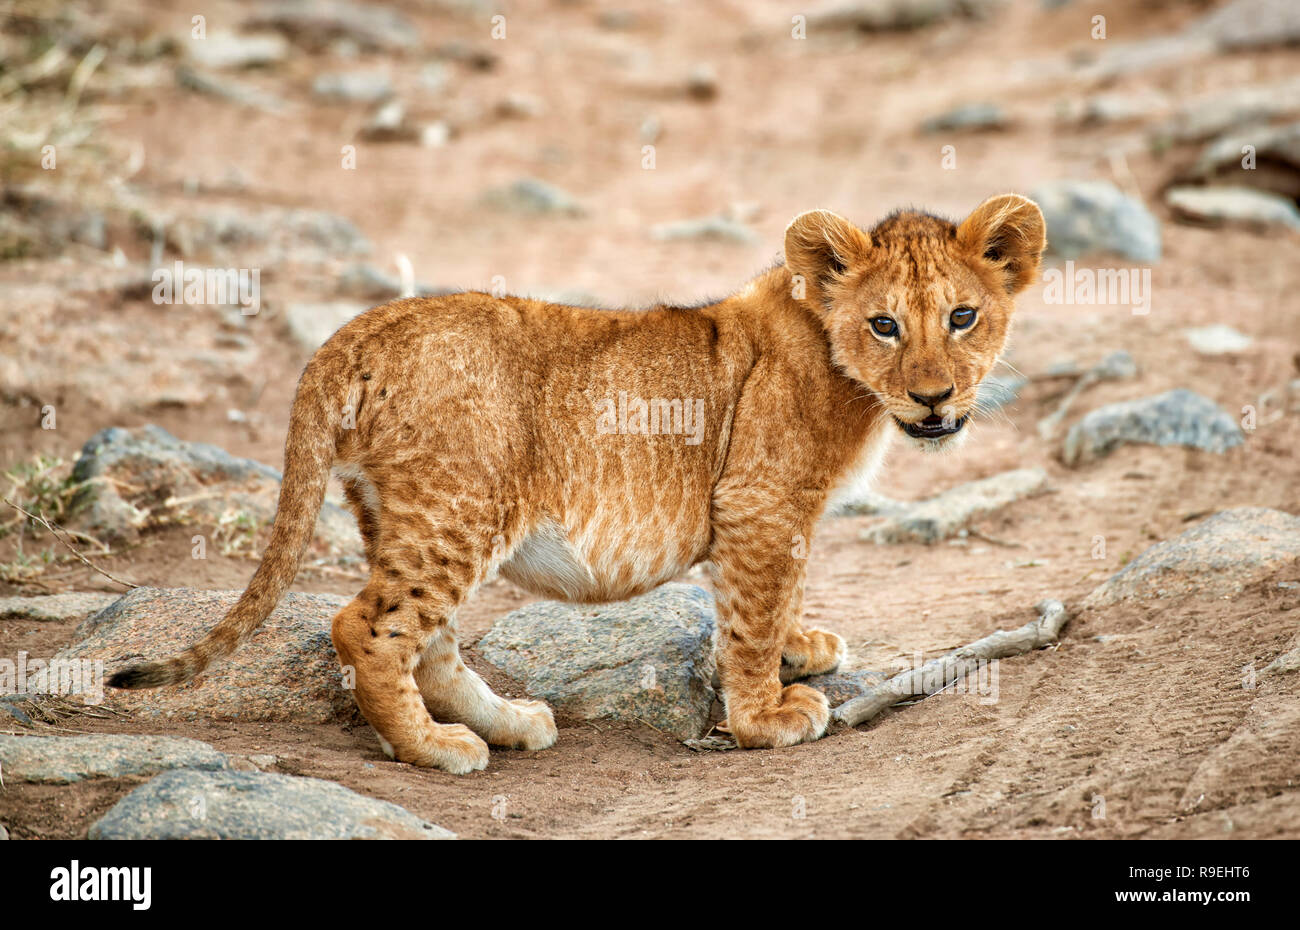 Cachorro de león, Panthera leo, el Parque nacional Serengeti, sitio del patrimonio mundial de la UNESCO, Tanzania, África Foto de stock